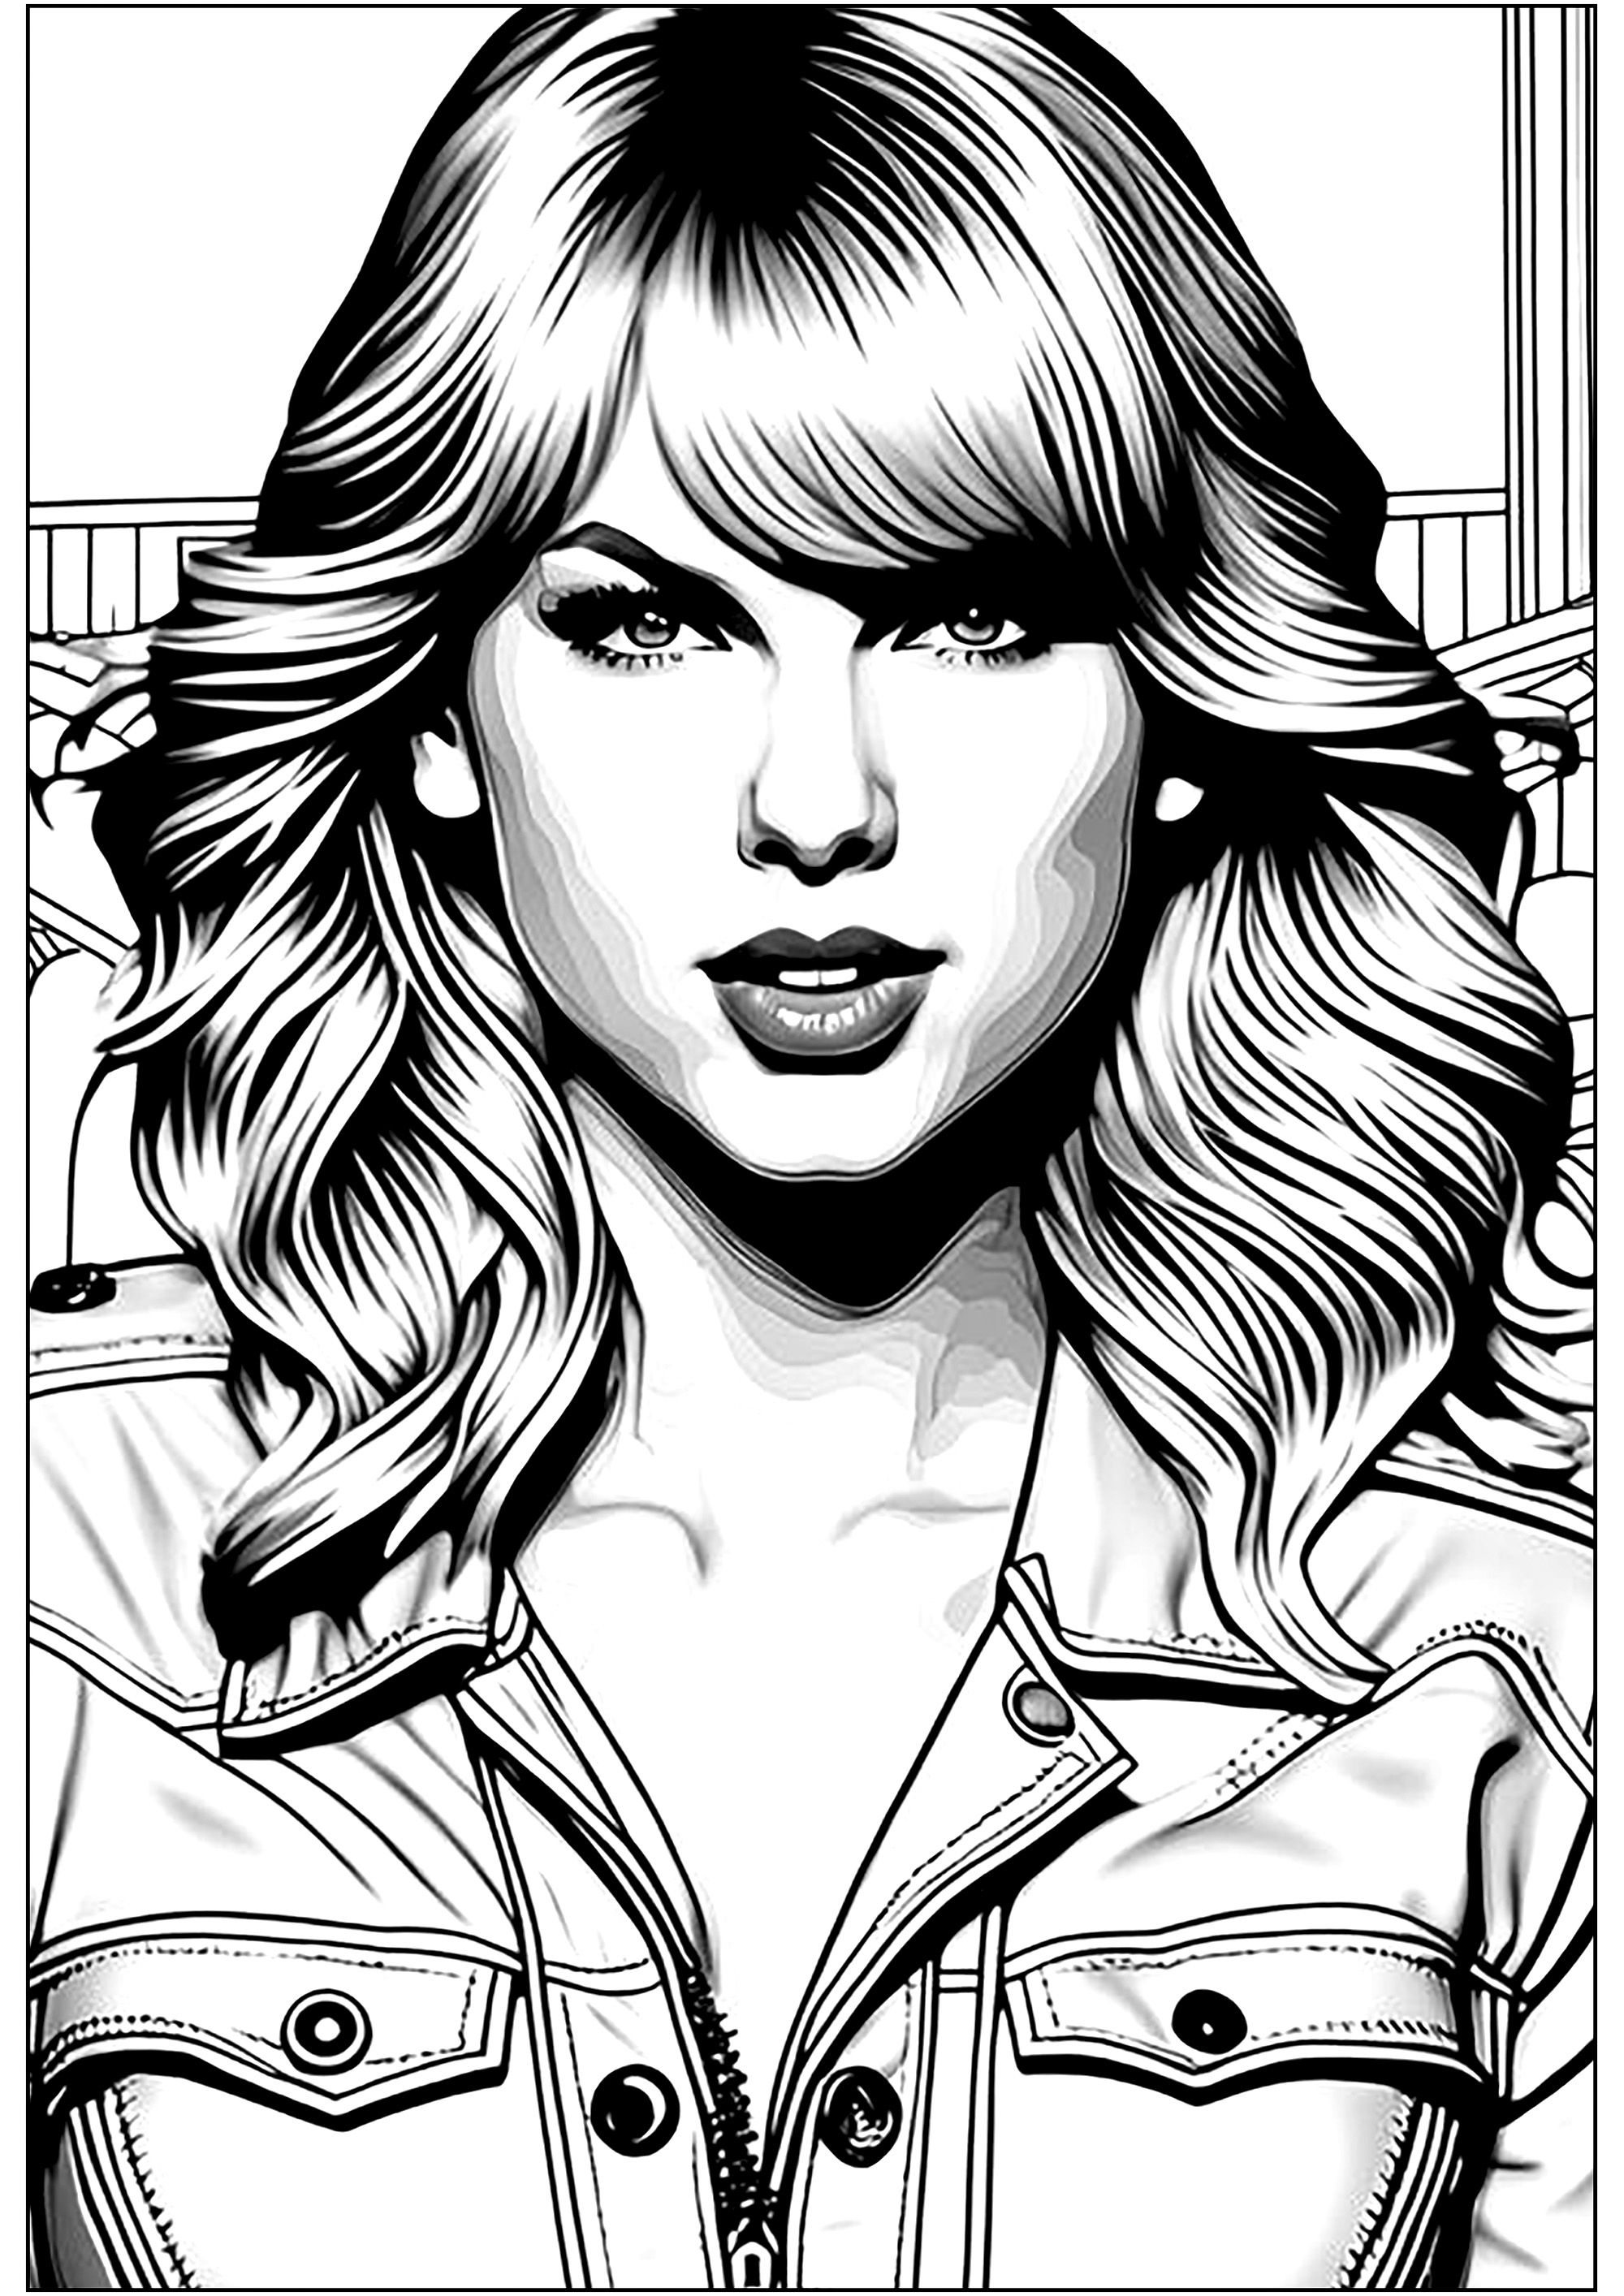 Livro para colorir da Taylor Swift. Taylor tinha apenas 17 anos quando se estreou em Nashville, em 2006, na editora Big Machine de Scott Borchetta. Ela lançou seu primeiro álbum Country, no qual escreveu quase todas as músicas.